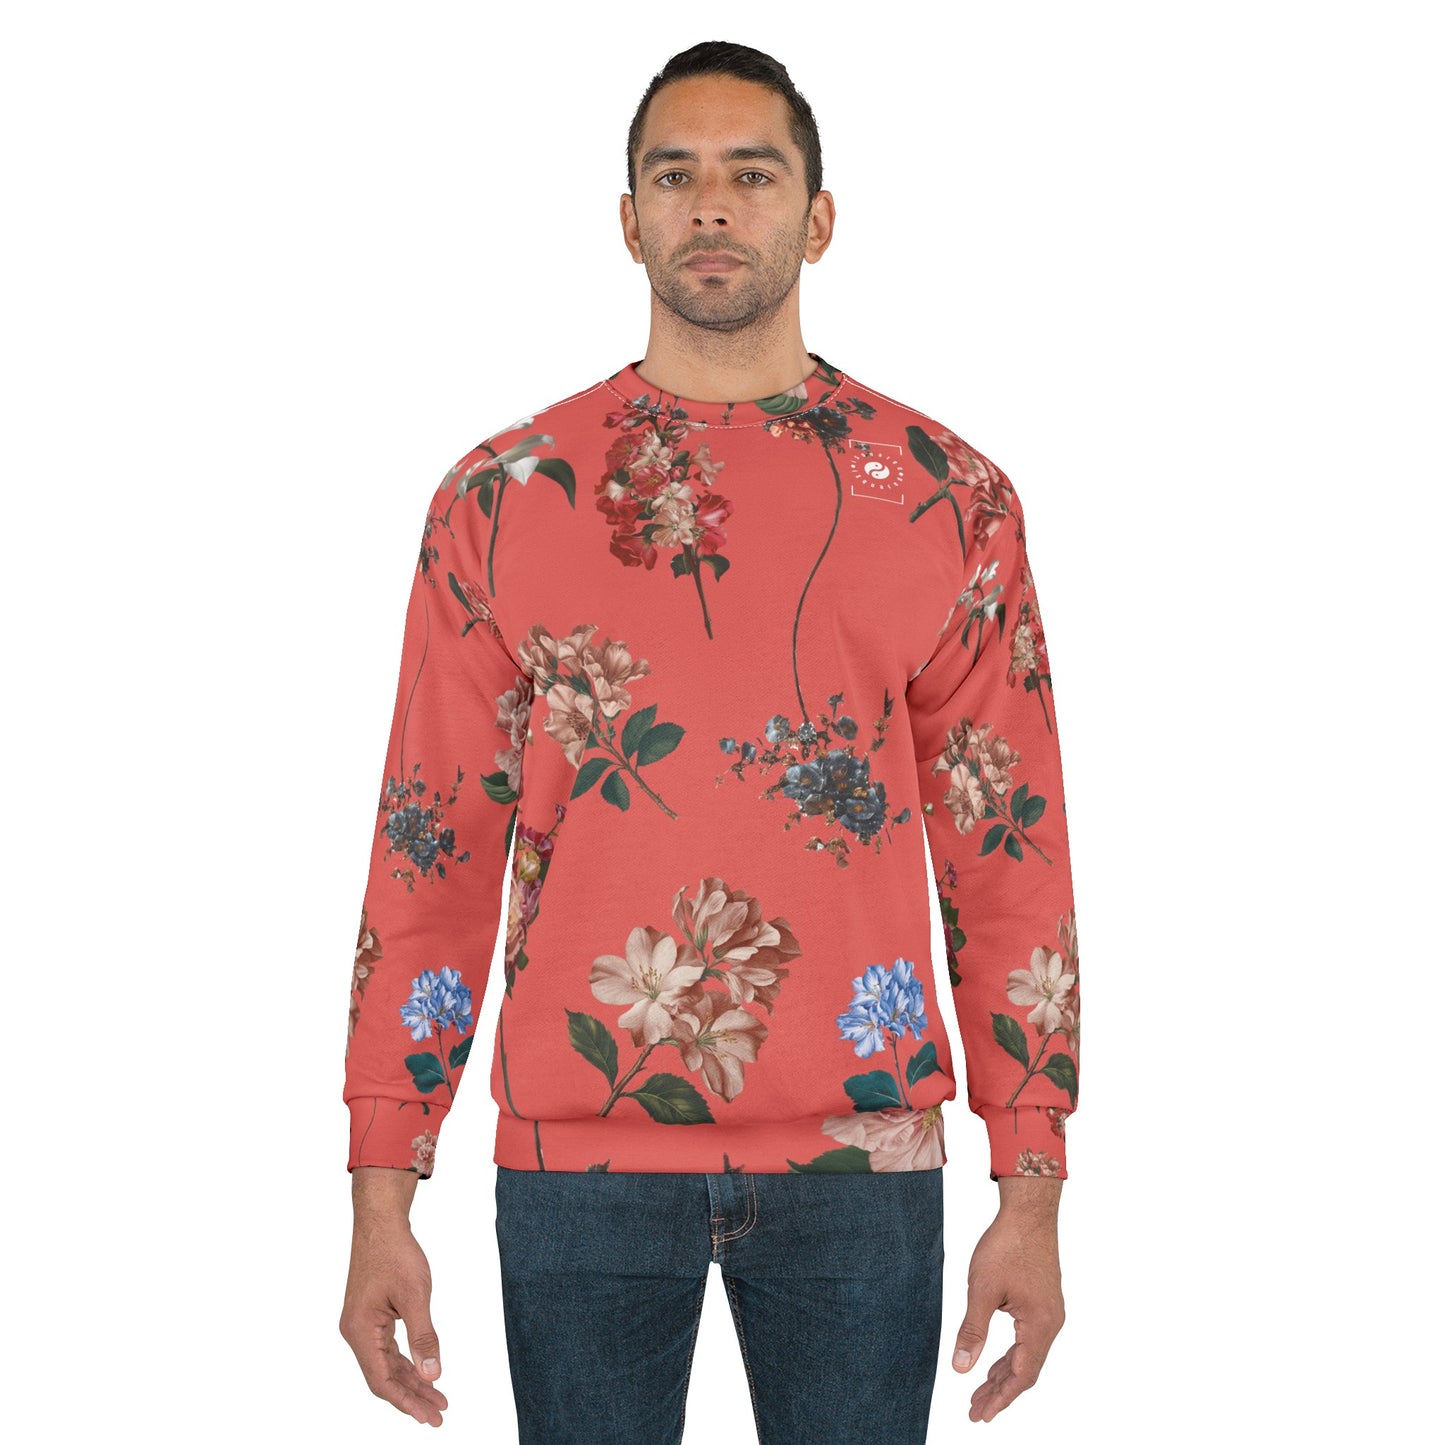 Botaniques sur corail - Sweat-shirt unisexe